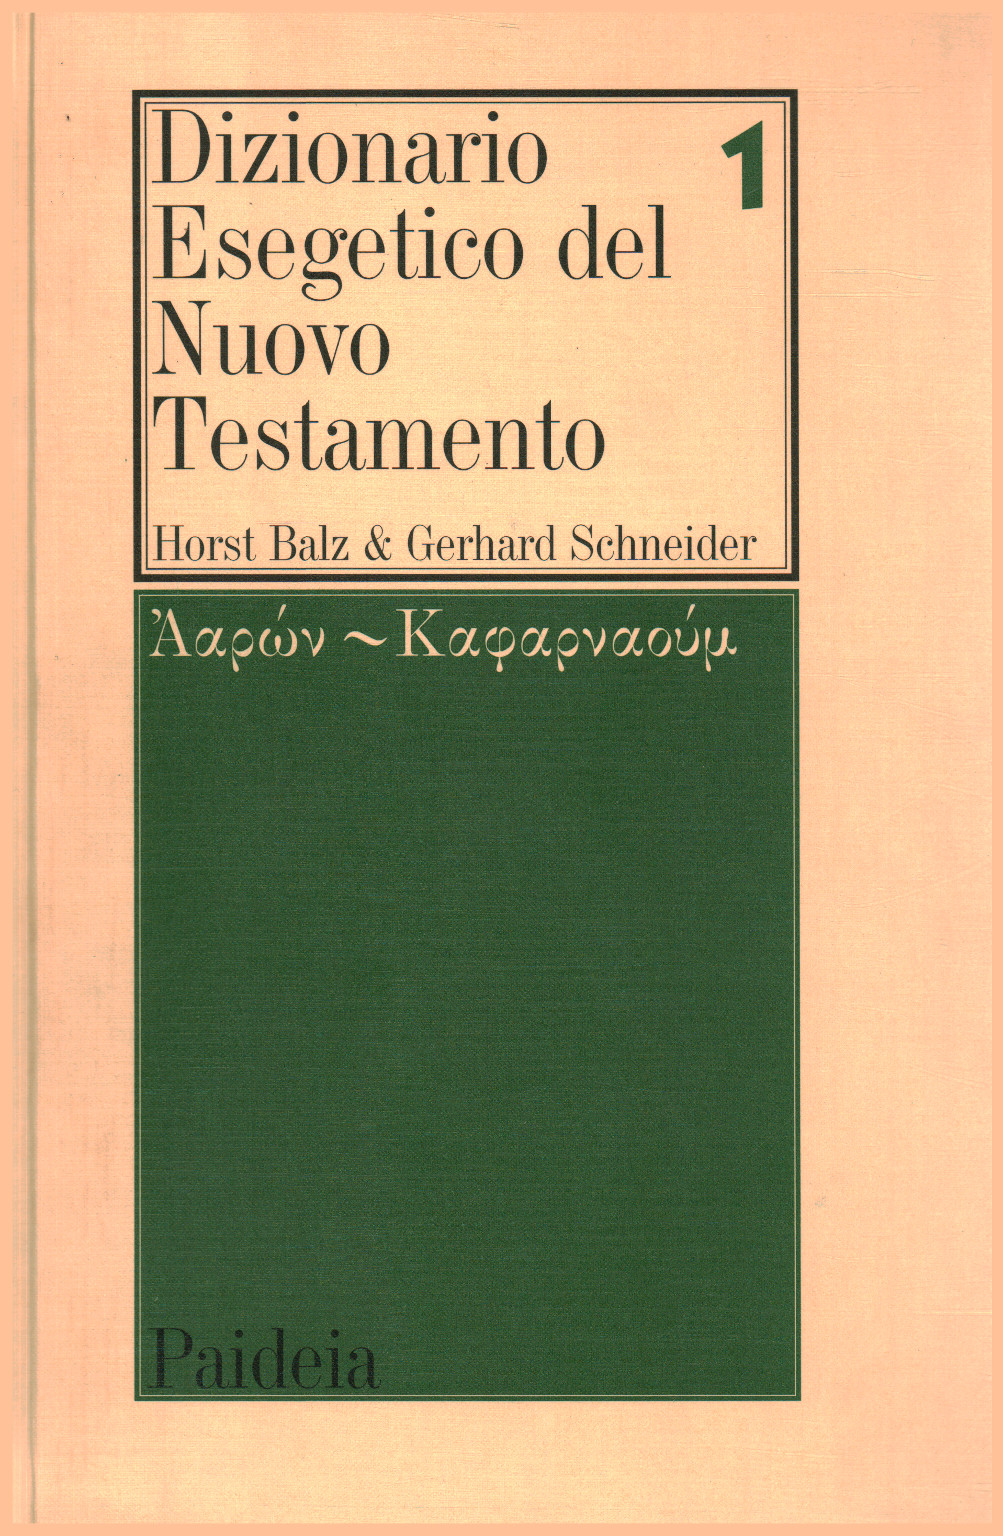 Diccionario Exegético del Nuevo Testamento (vol. 1), s.una.